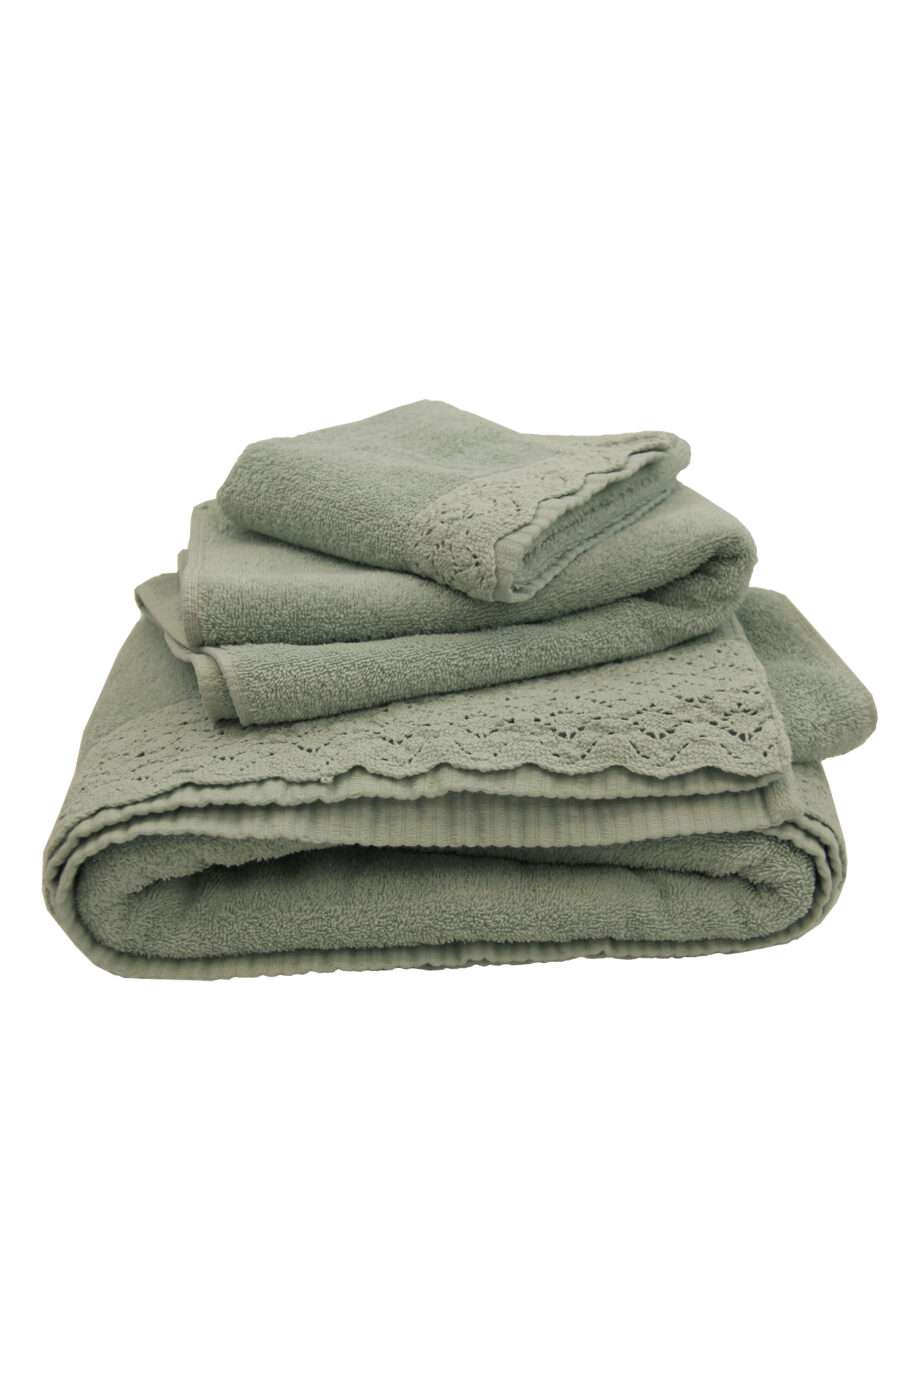 corsica mint woven cotton towel set